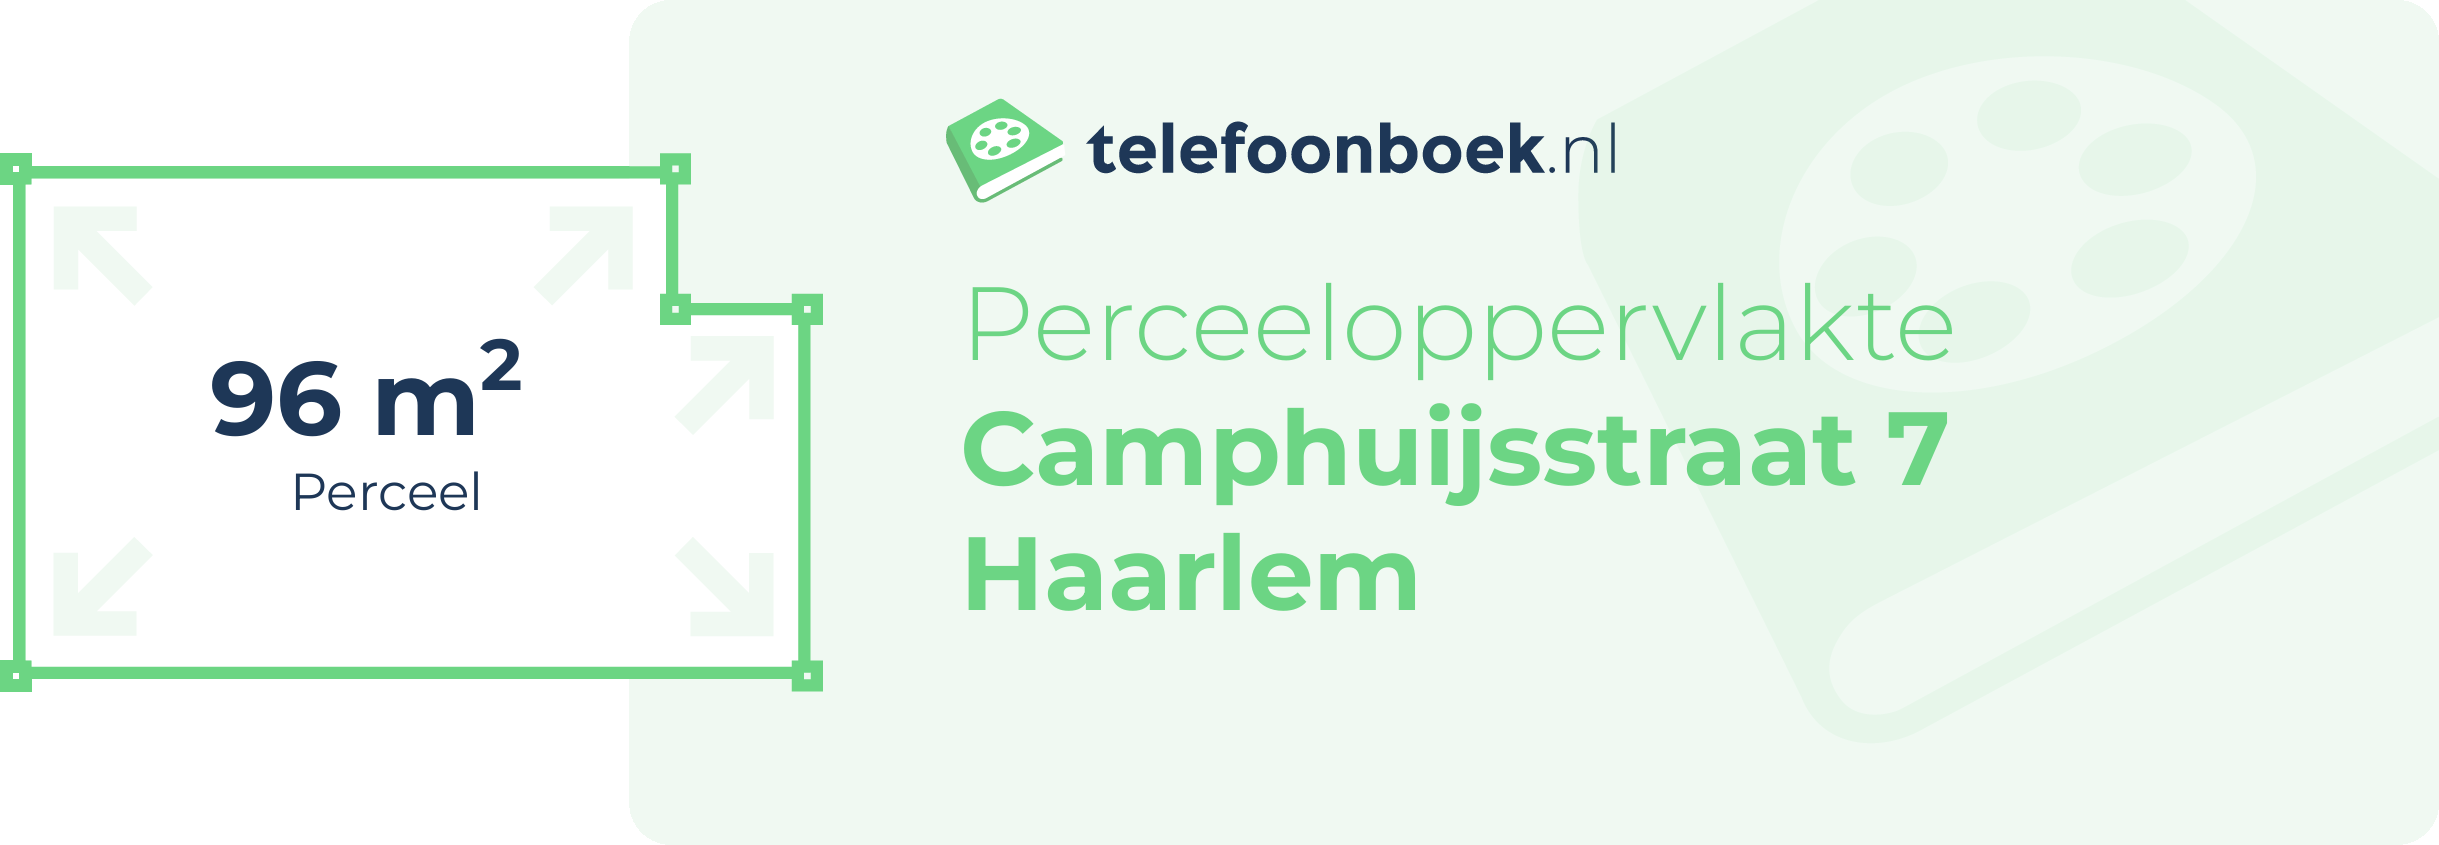 Perceeloppervlakte Camphuijsstraat 7 Haarlem